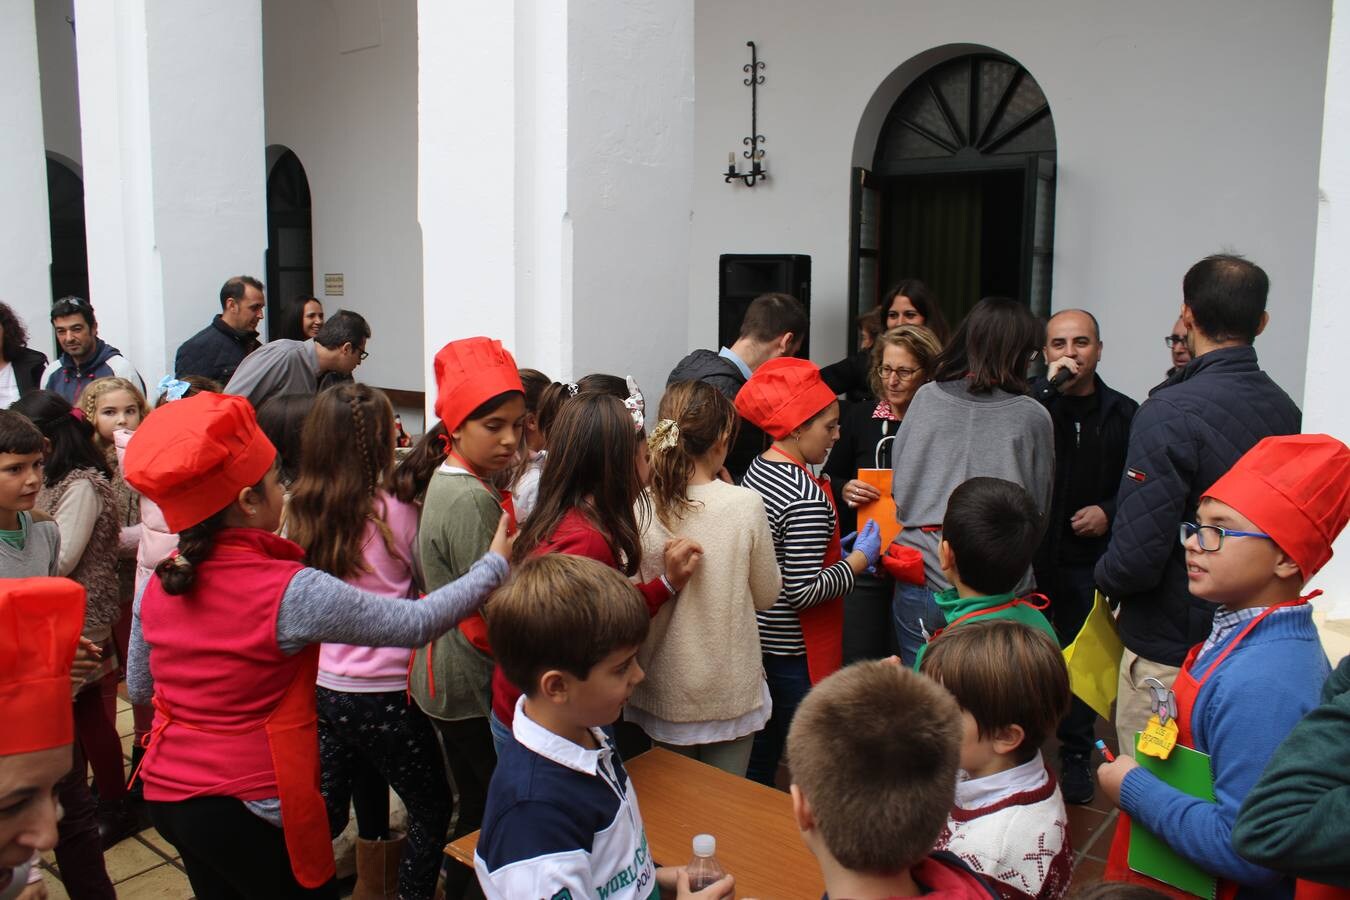 Mucha participación en la 'Tapa solidaria' organizada por Cáritas